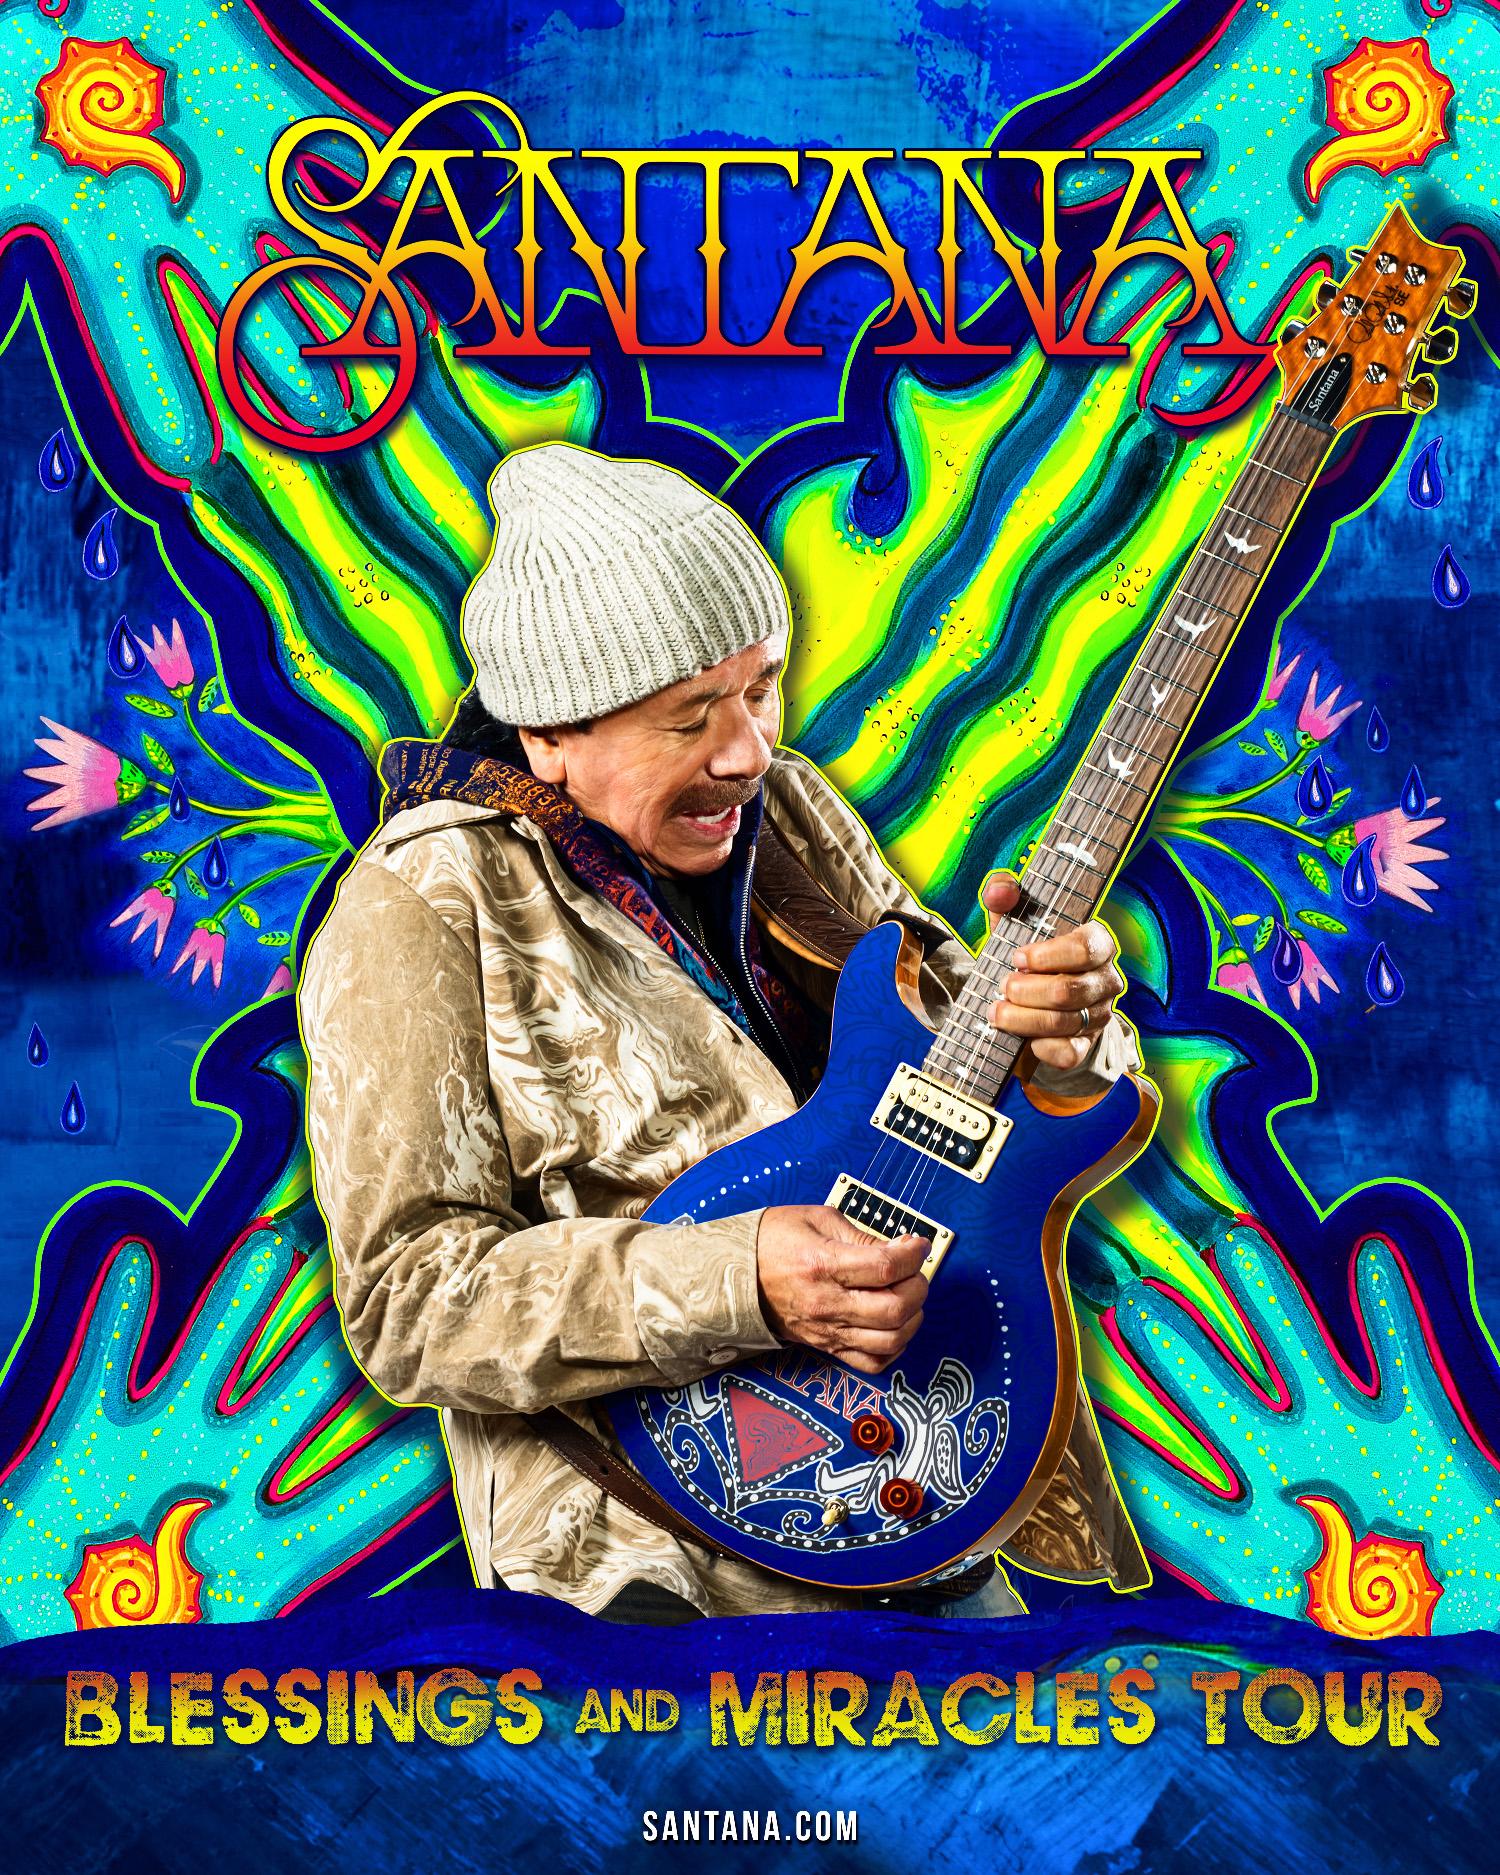 $!Agotamiento y deshidratación, las causas del desmayo de Carlos Santana en concierto